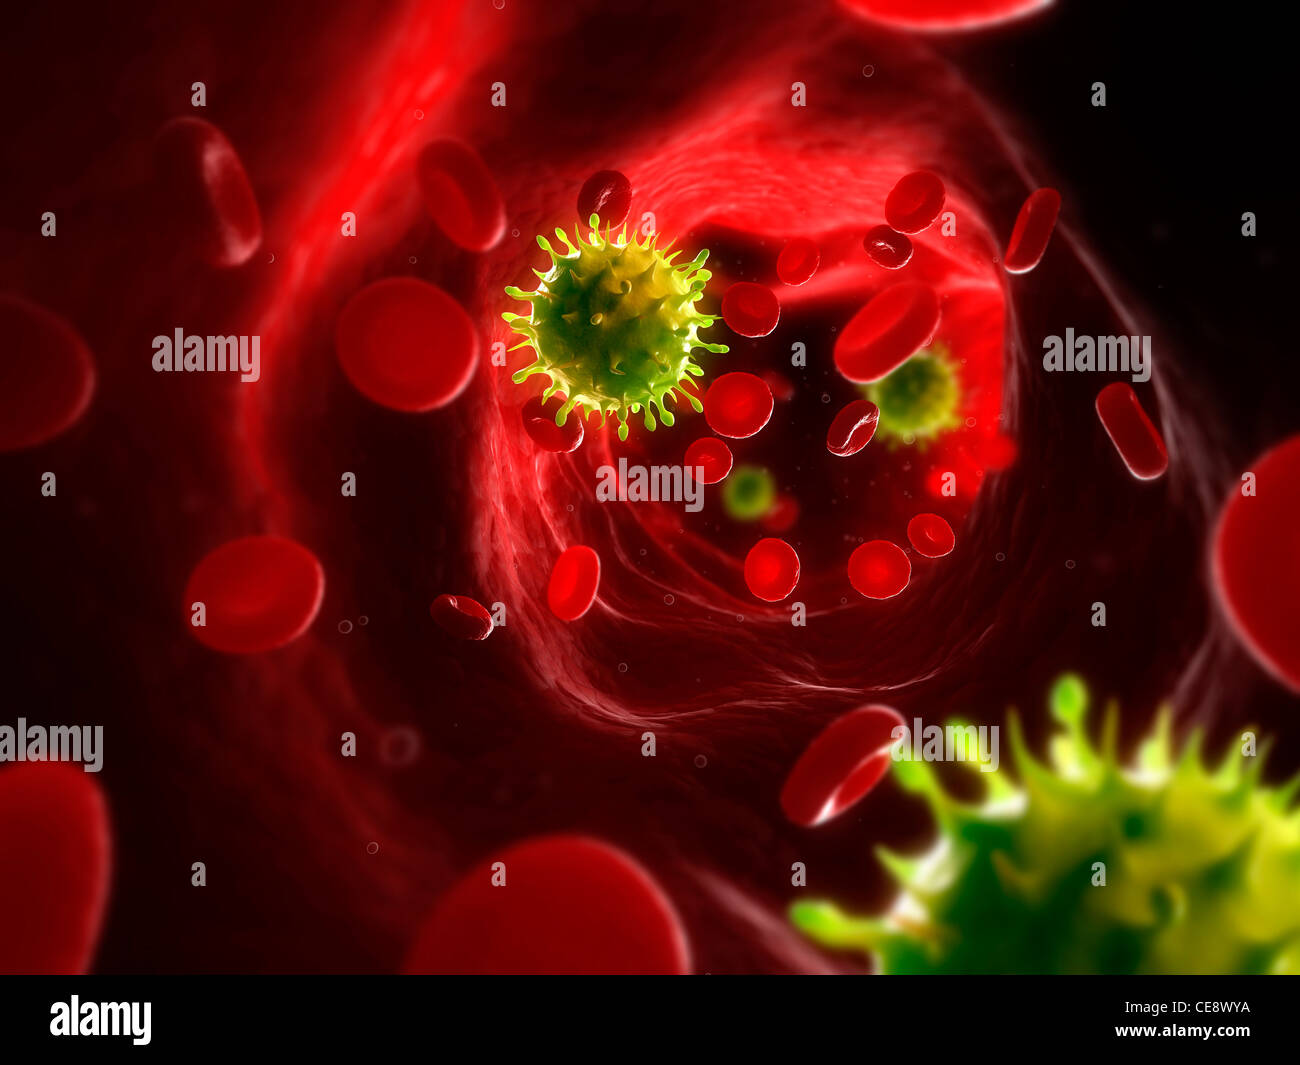 Virusinfektion, konzeptionelle Computer Grafik. Virus-Partikel in die Blutbahn. Stockfoto